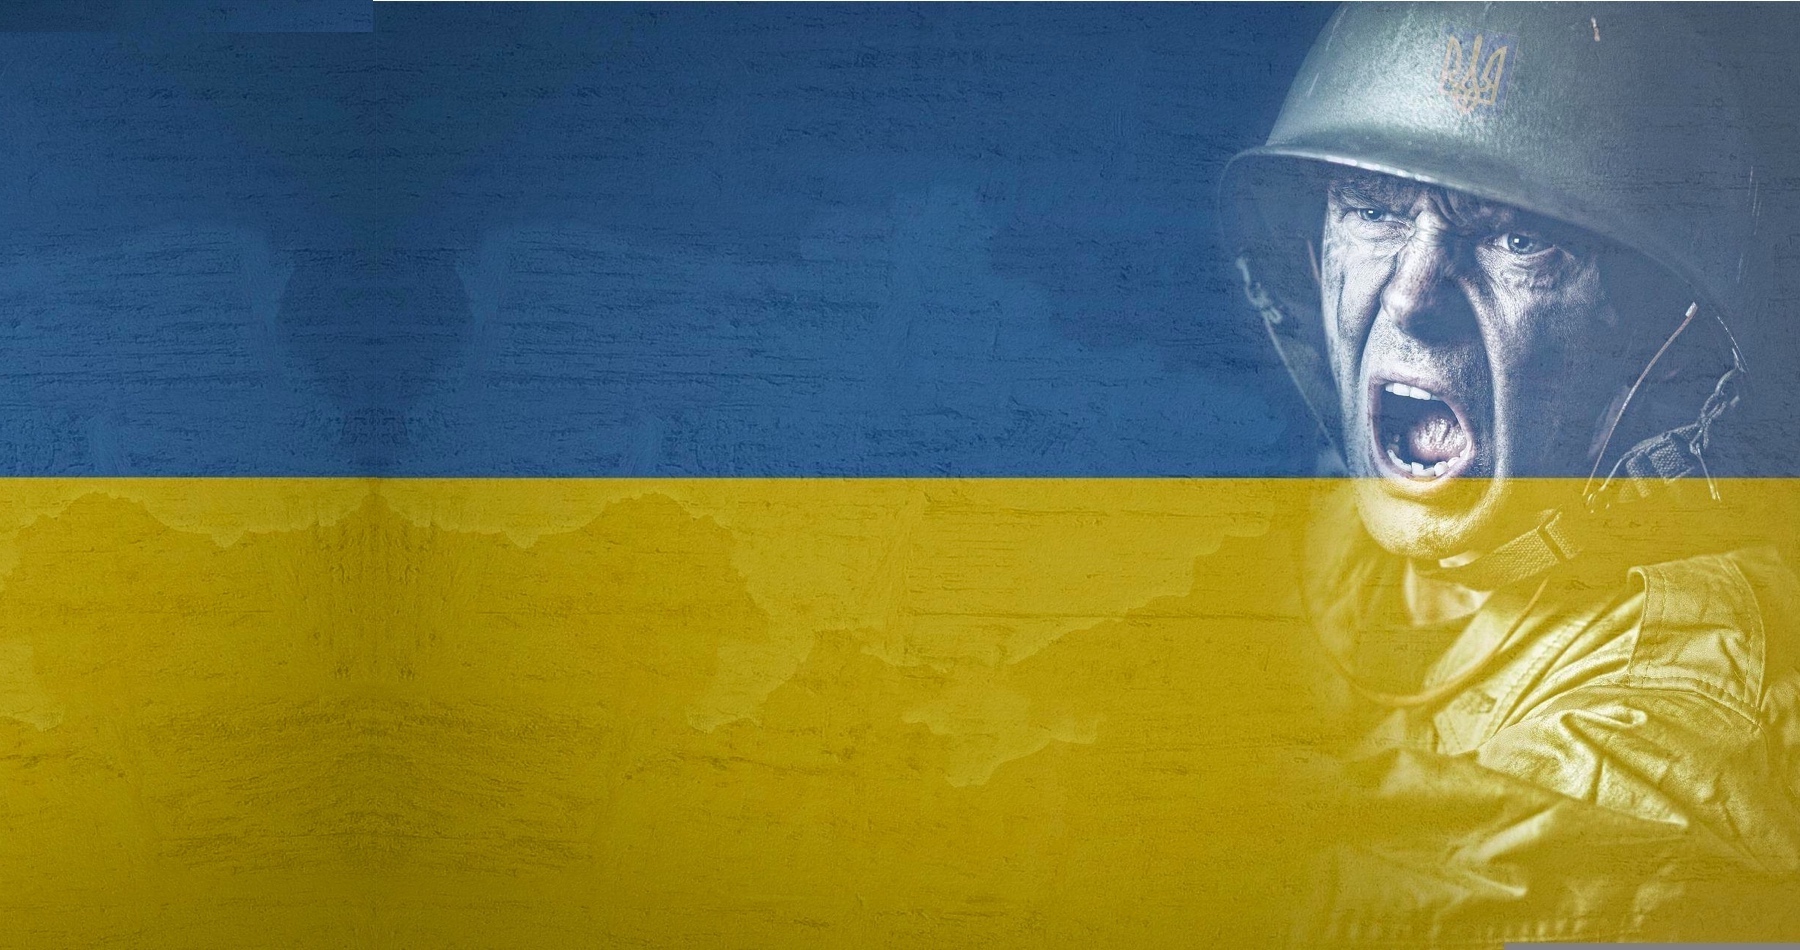 Na Ukrajine začína morálny rozklad spoločnosti